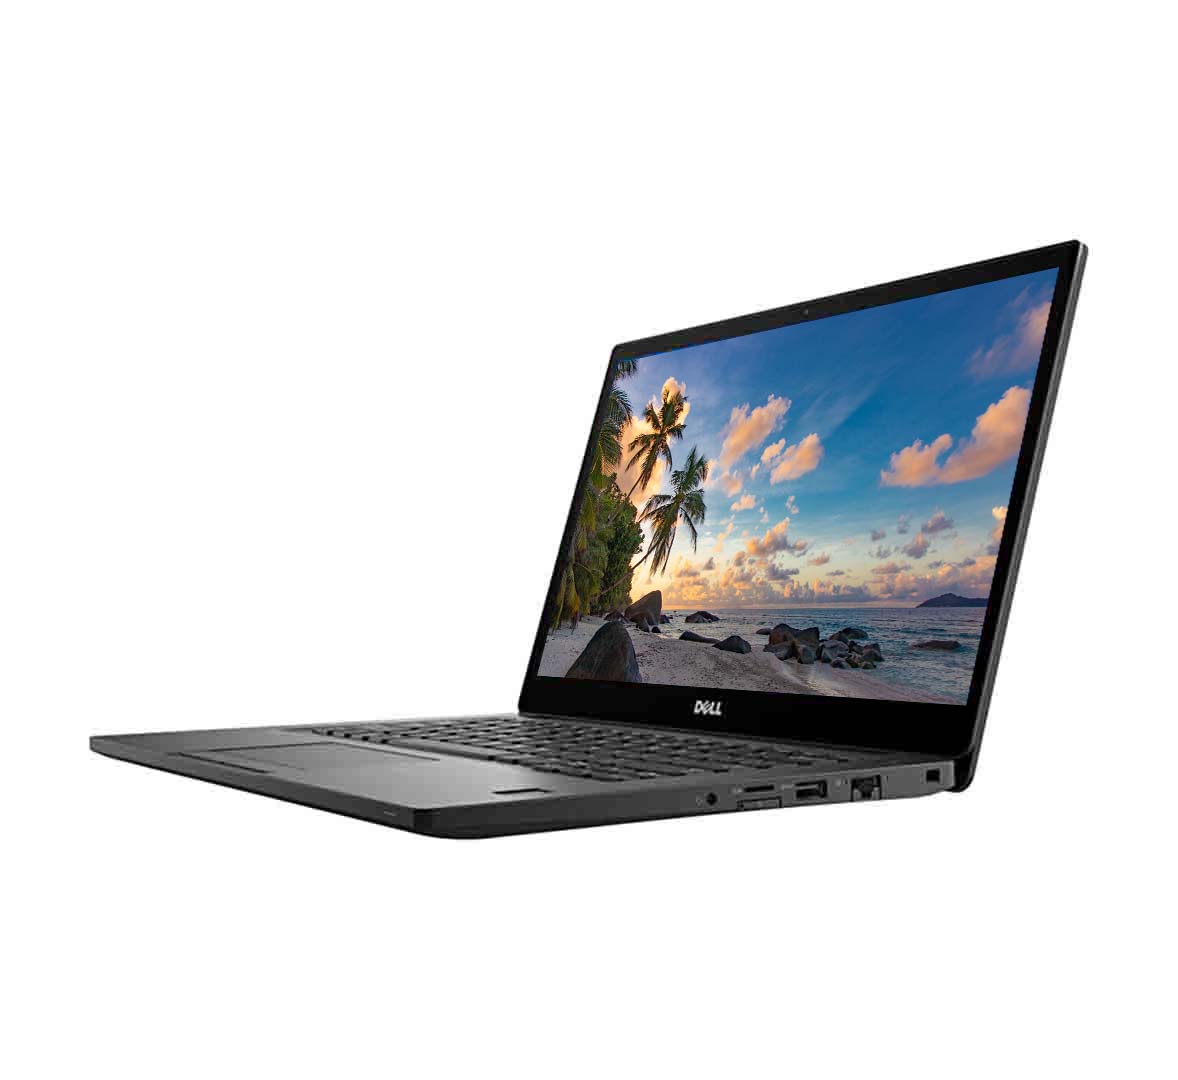 Dell Latitude E7480 Business Laptop, Intel Core i5-7th Gen CPU, 8GB RAM, 256GB SSD, 14.1 inch Display, Windows 10 Pro